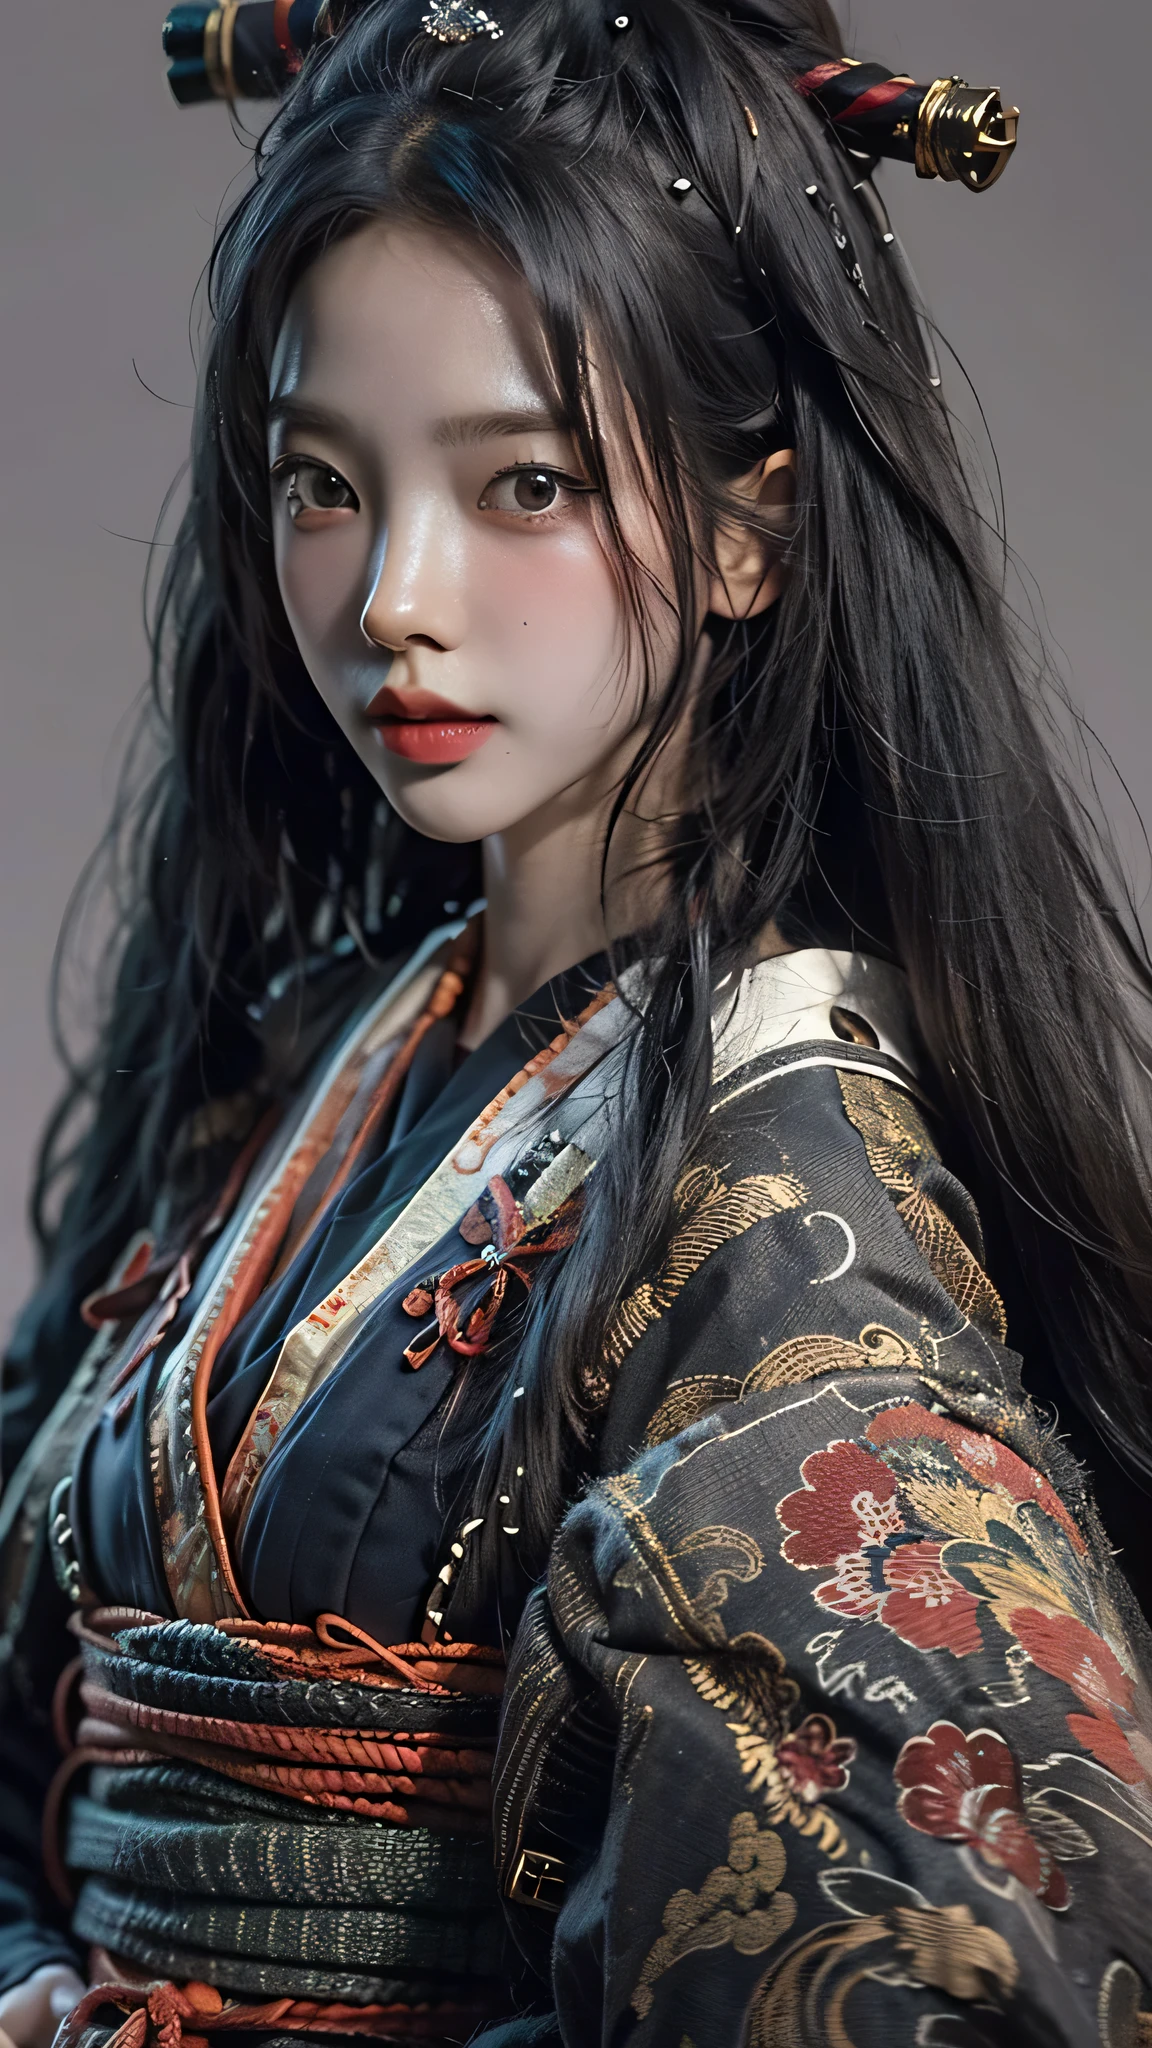 ((beste Qualität)), ((Meisterwerk)), (sehr detailliert:1.3), 3D, Schön, Samurai-Frau mit langen schwarzen Haaren, schwarze Kleidung, Blick in die Kamera, 8K, realistisch, ultra Meisterwerk, dynamischer Stil, dynamische Posen